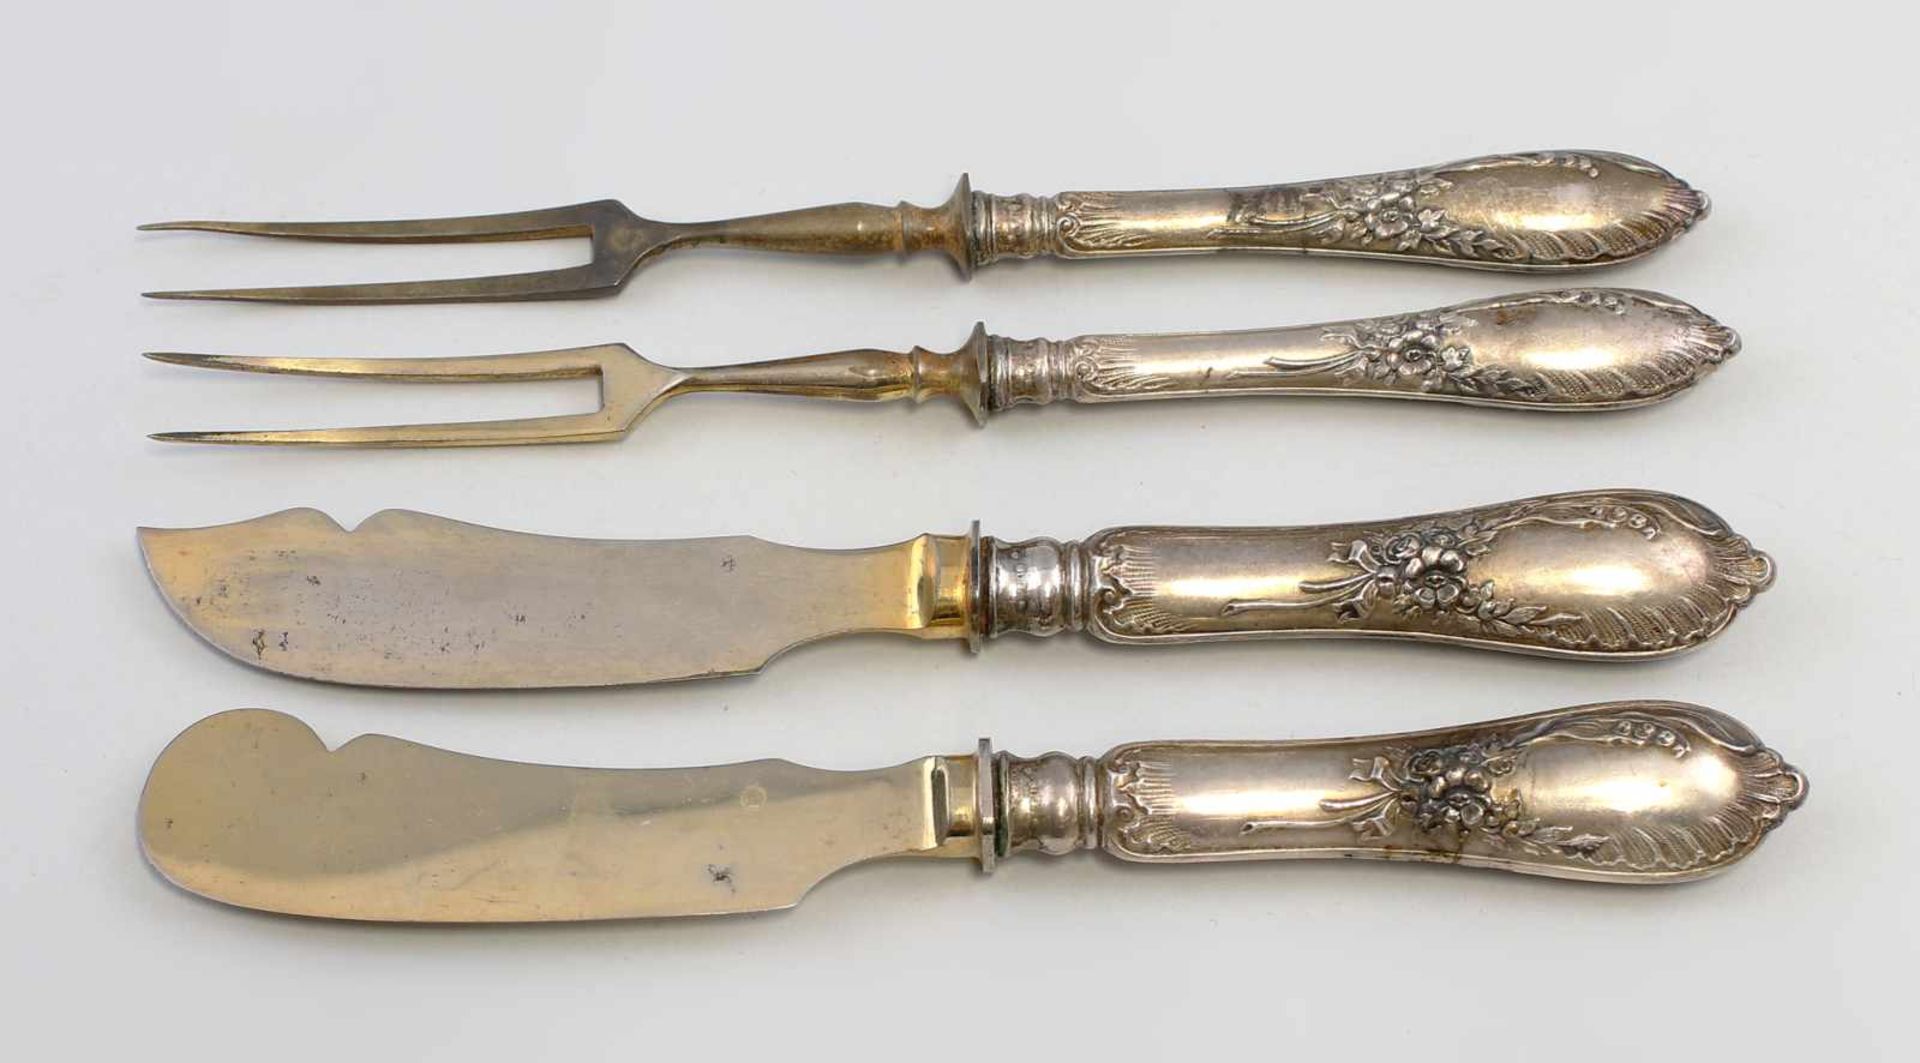 Vorlegeteile mit Silbergriffen Gründerzeit .um 1880, alle Teile mit gefüllten Silbergriffen, gepunzt